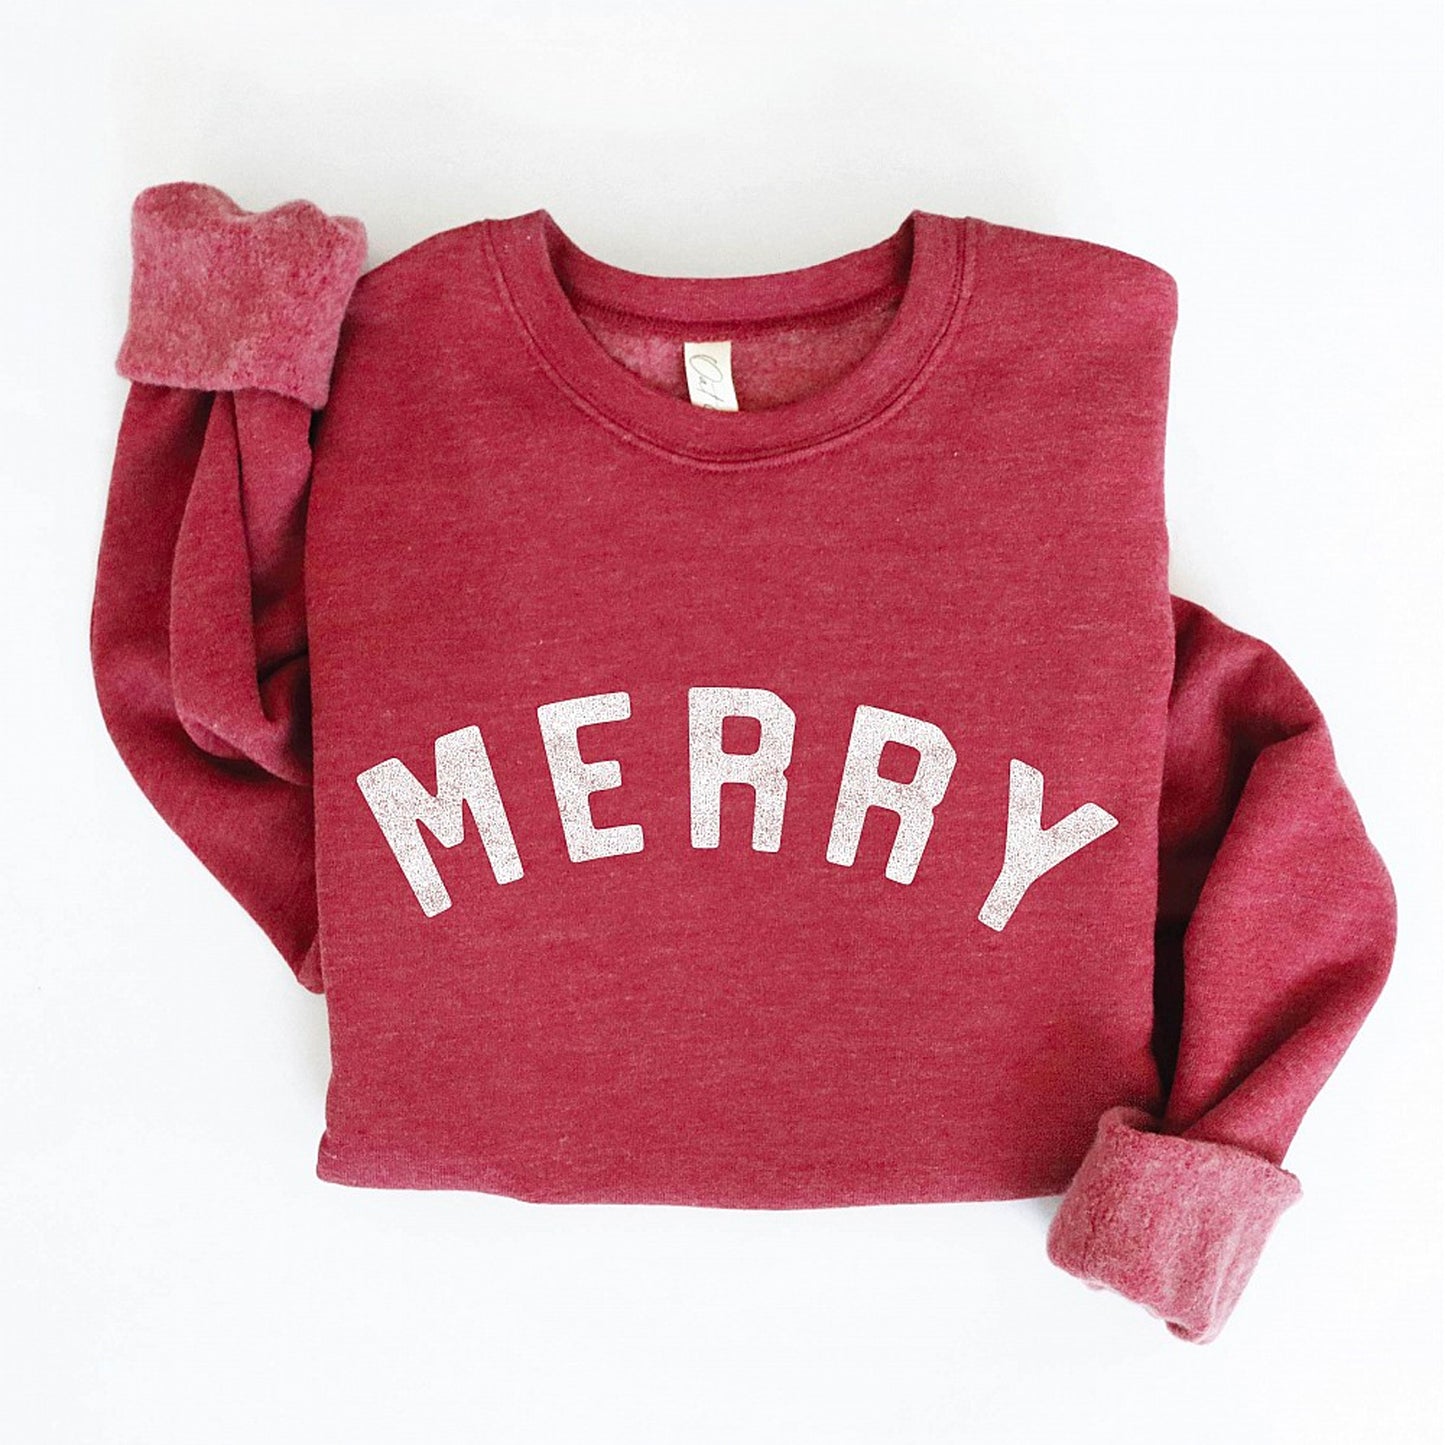 Merry Women's Graphic Fleece Sweatshirt, Maroon